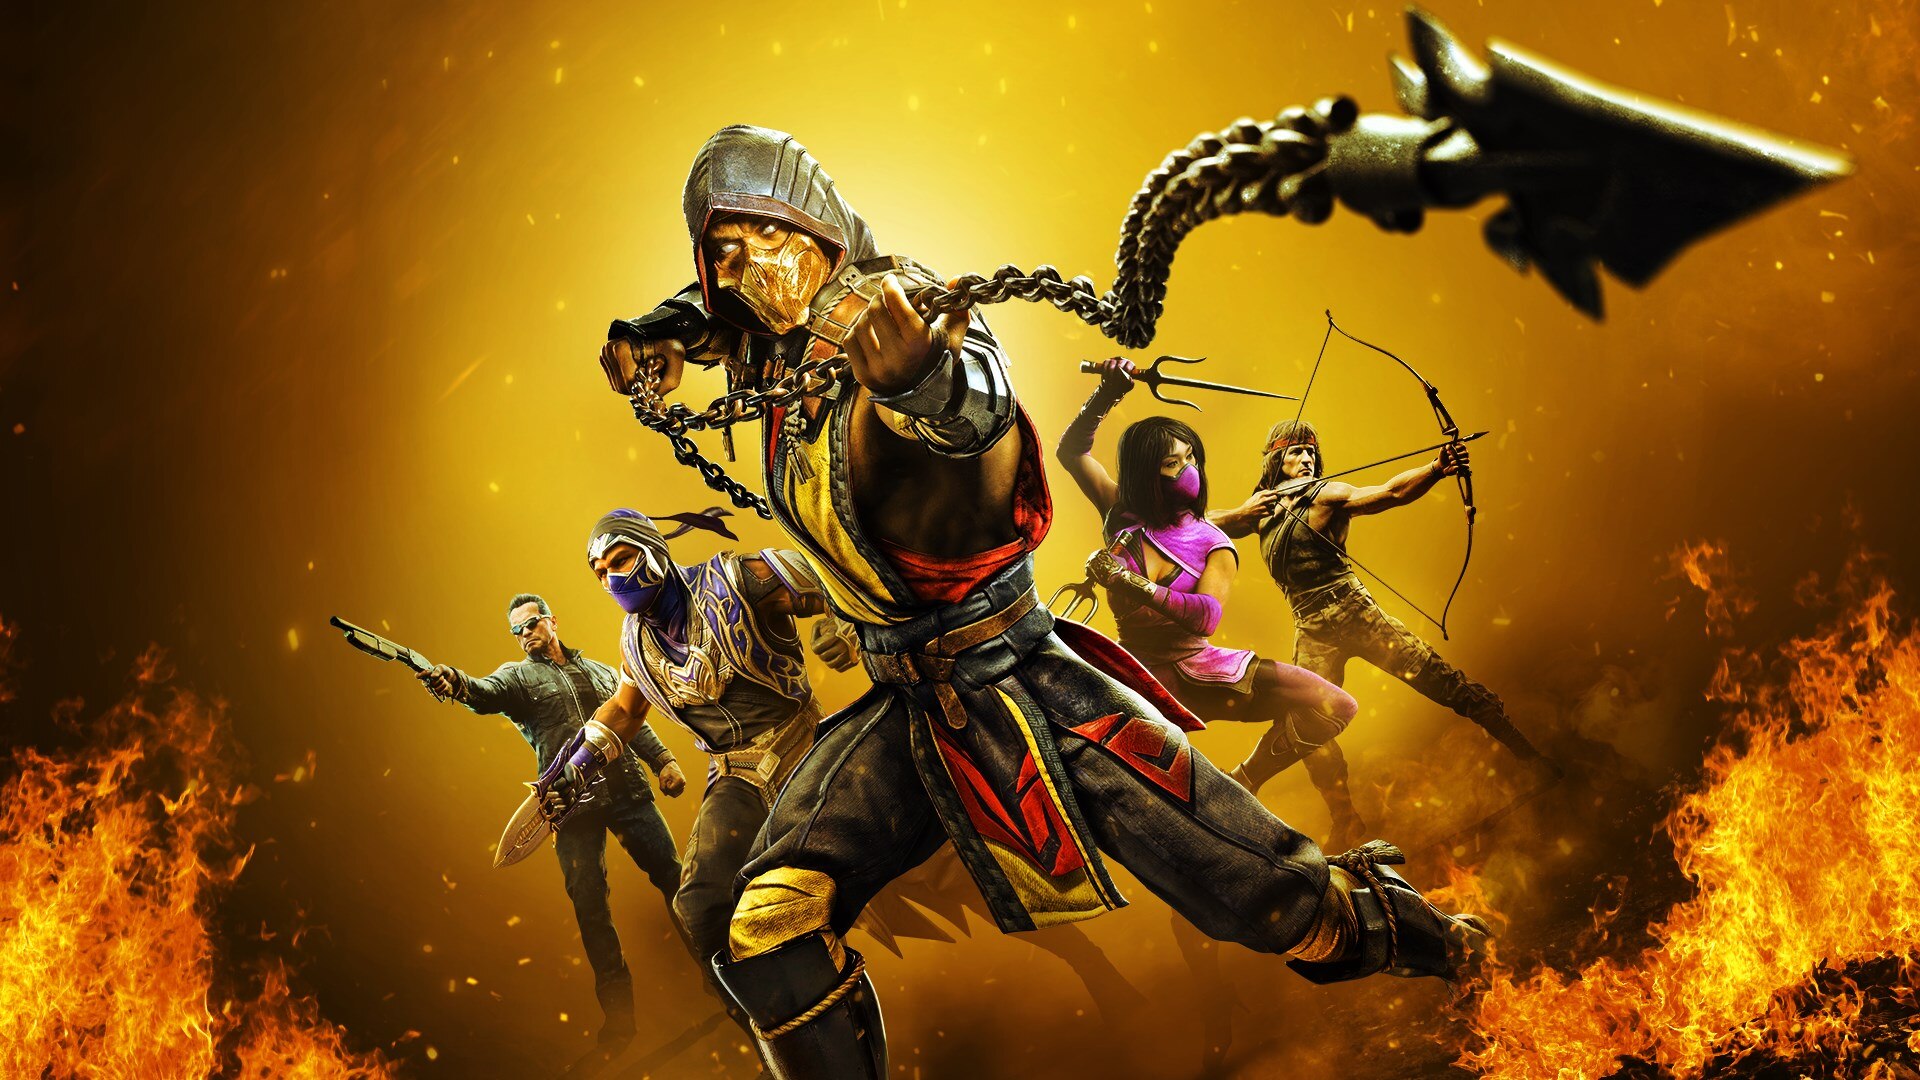 Mortal Kombat Online - The Ultimate Mortal Kombat Experience  Reptile mortal  kombat, Mortal kombat, Scorpion mortal kombat